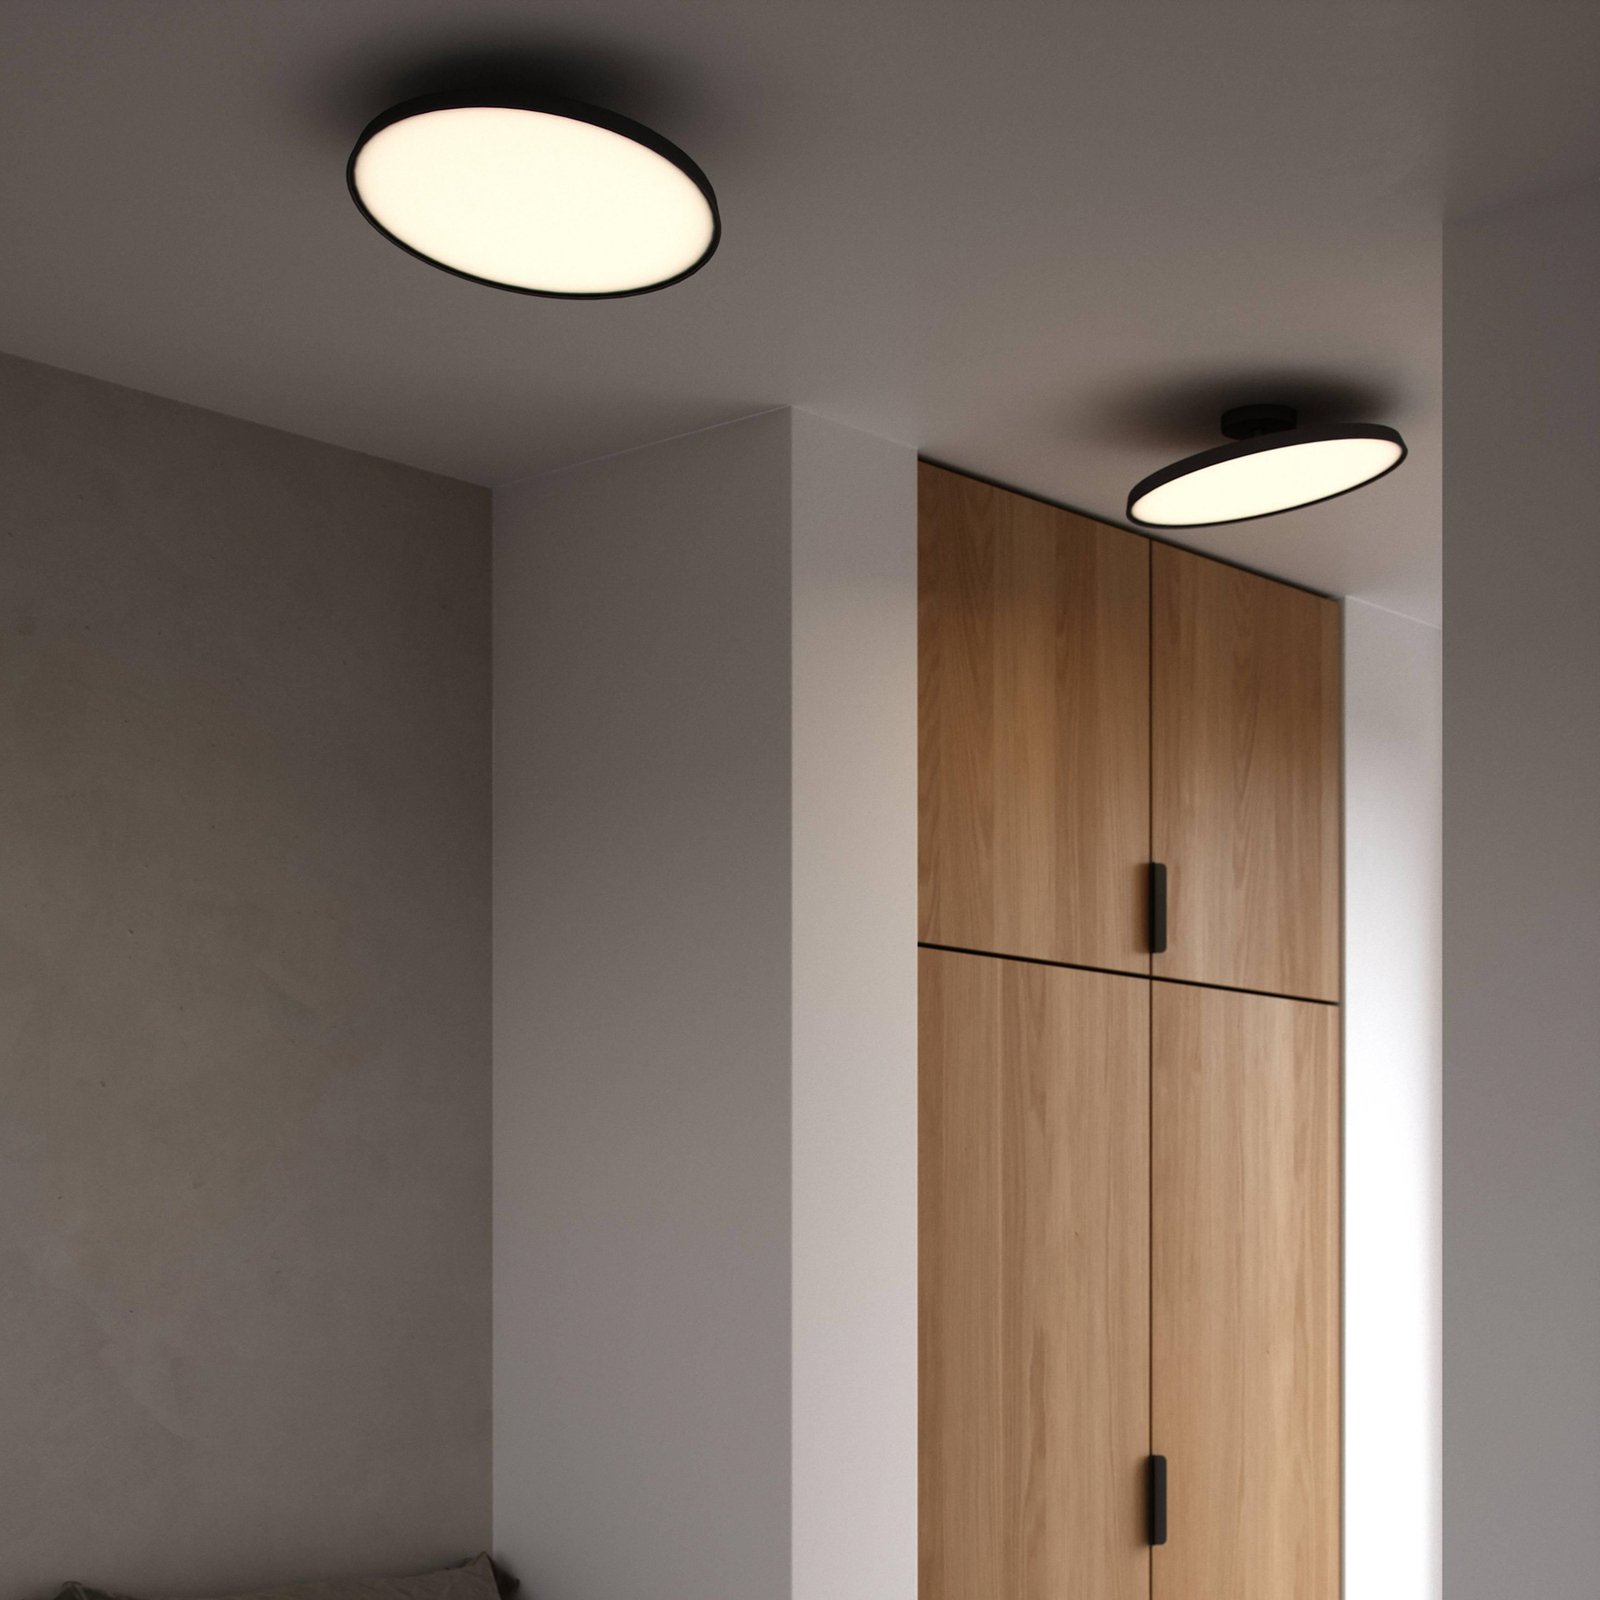 LED semi-flush ceiling light Kaito 2 Pro, Ø 40 cm, black, spacing